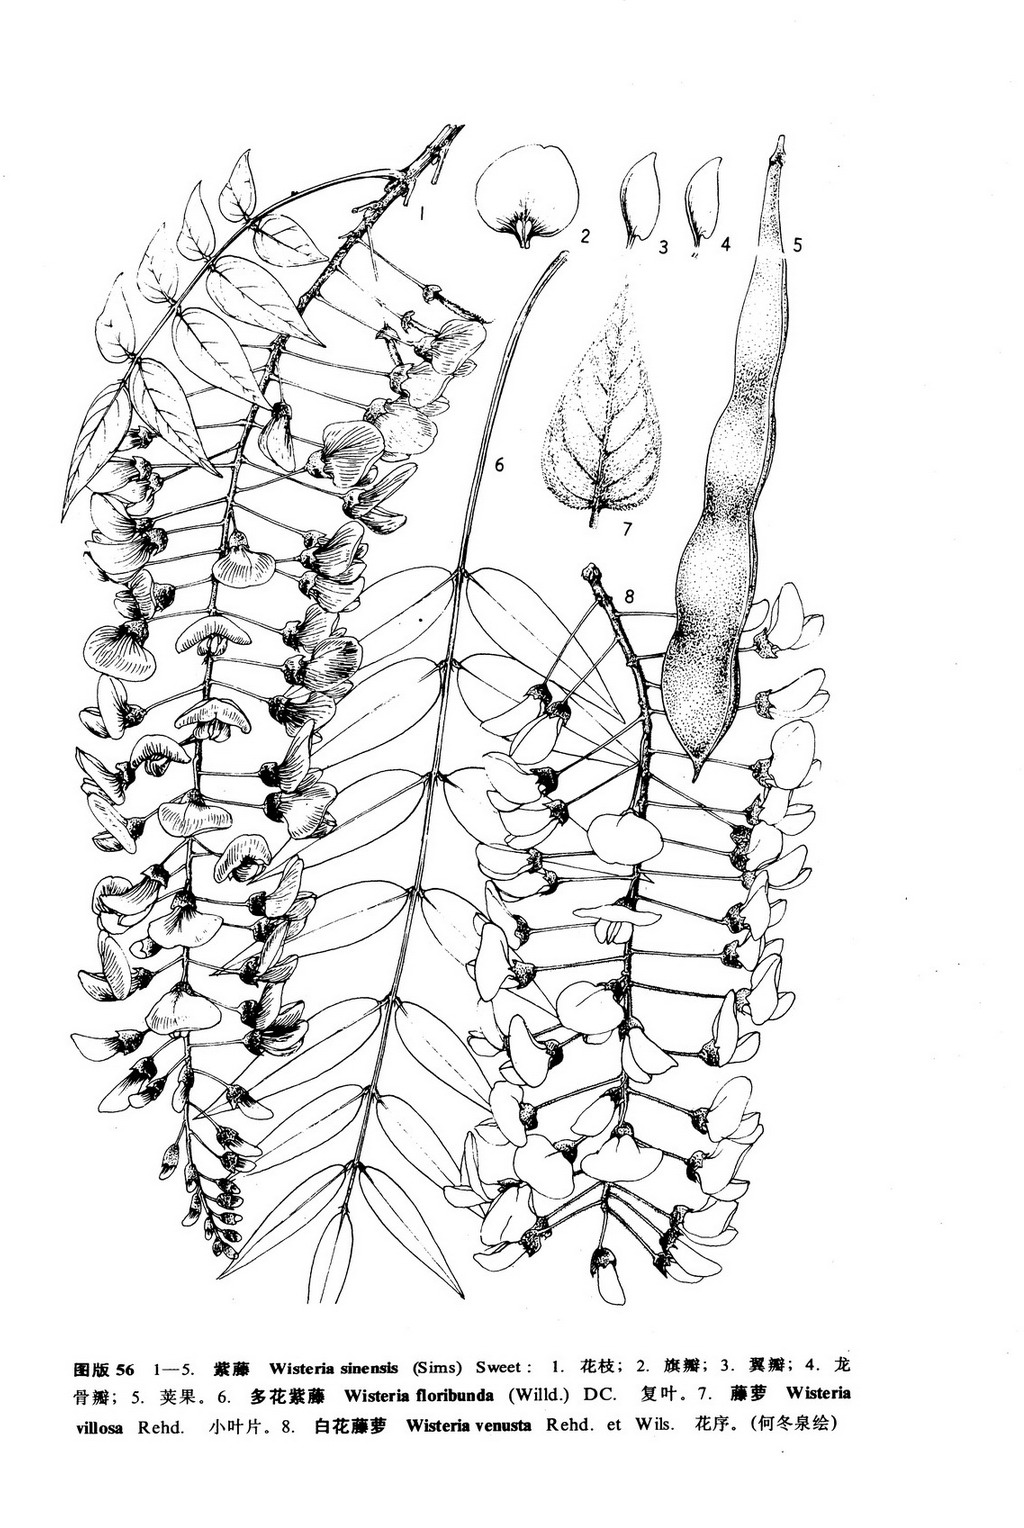 被子植物花图式与花程式-被子植物花图式与花程式-丁香实验